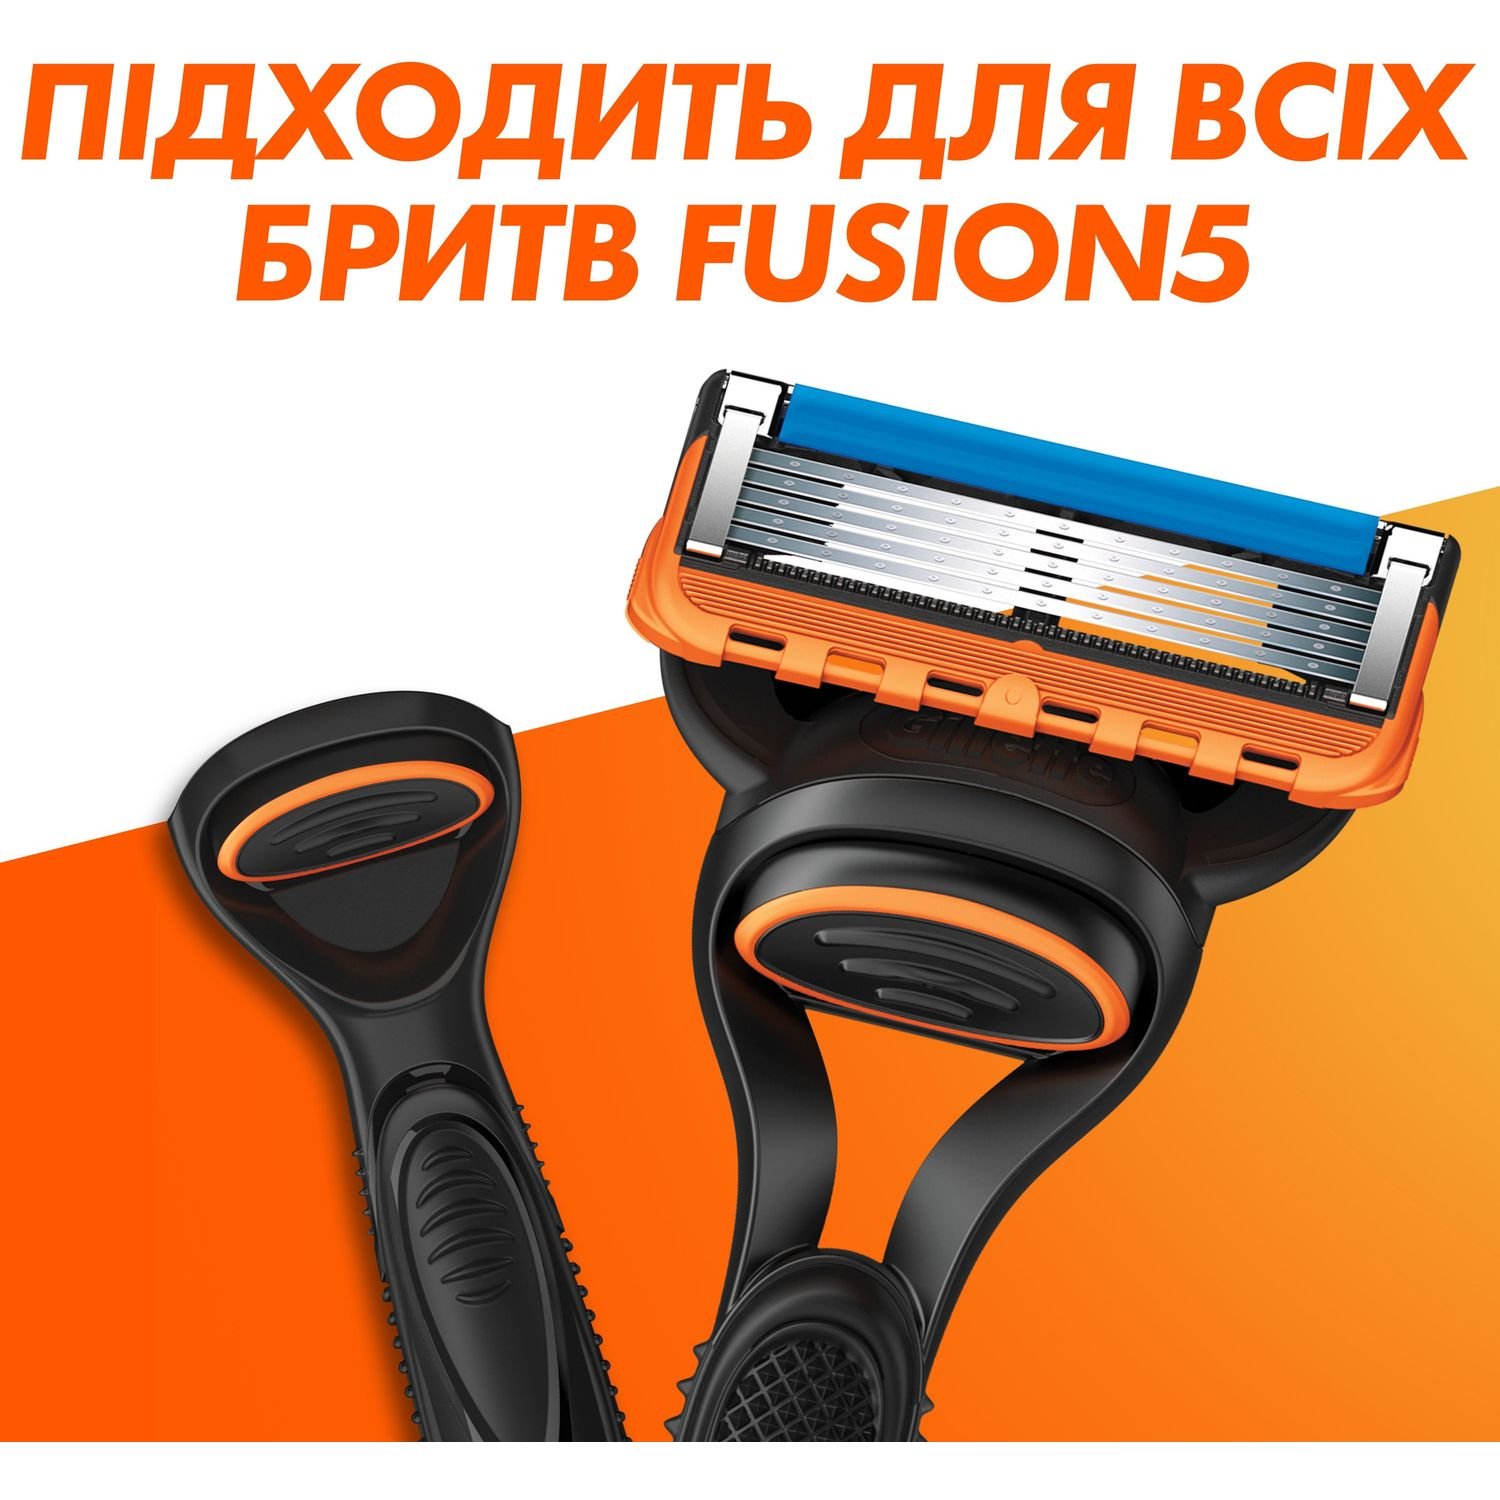 Сменные картриджи для бритья мужские Gillette Fusion5 12 шт. - фото 6